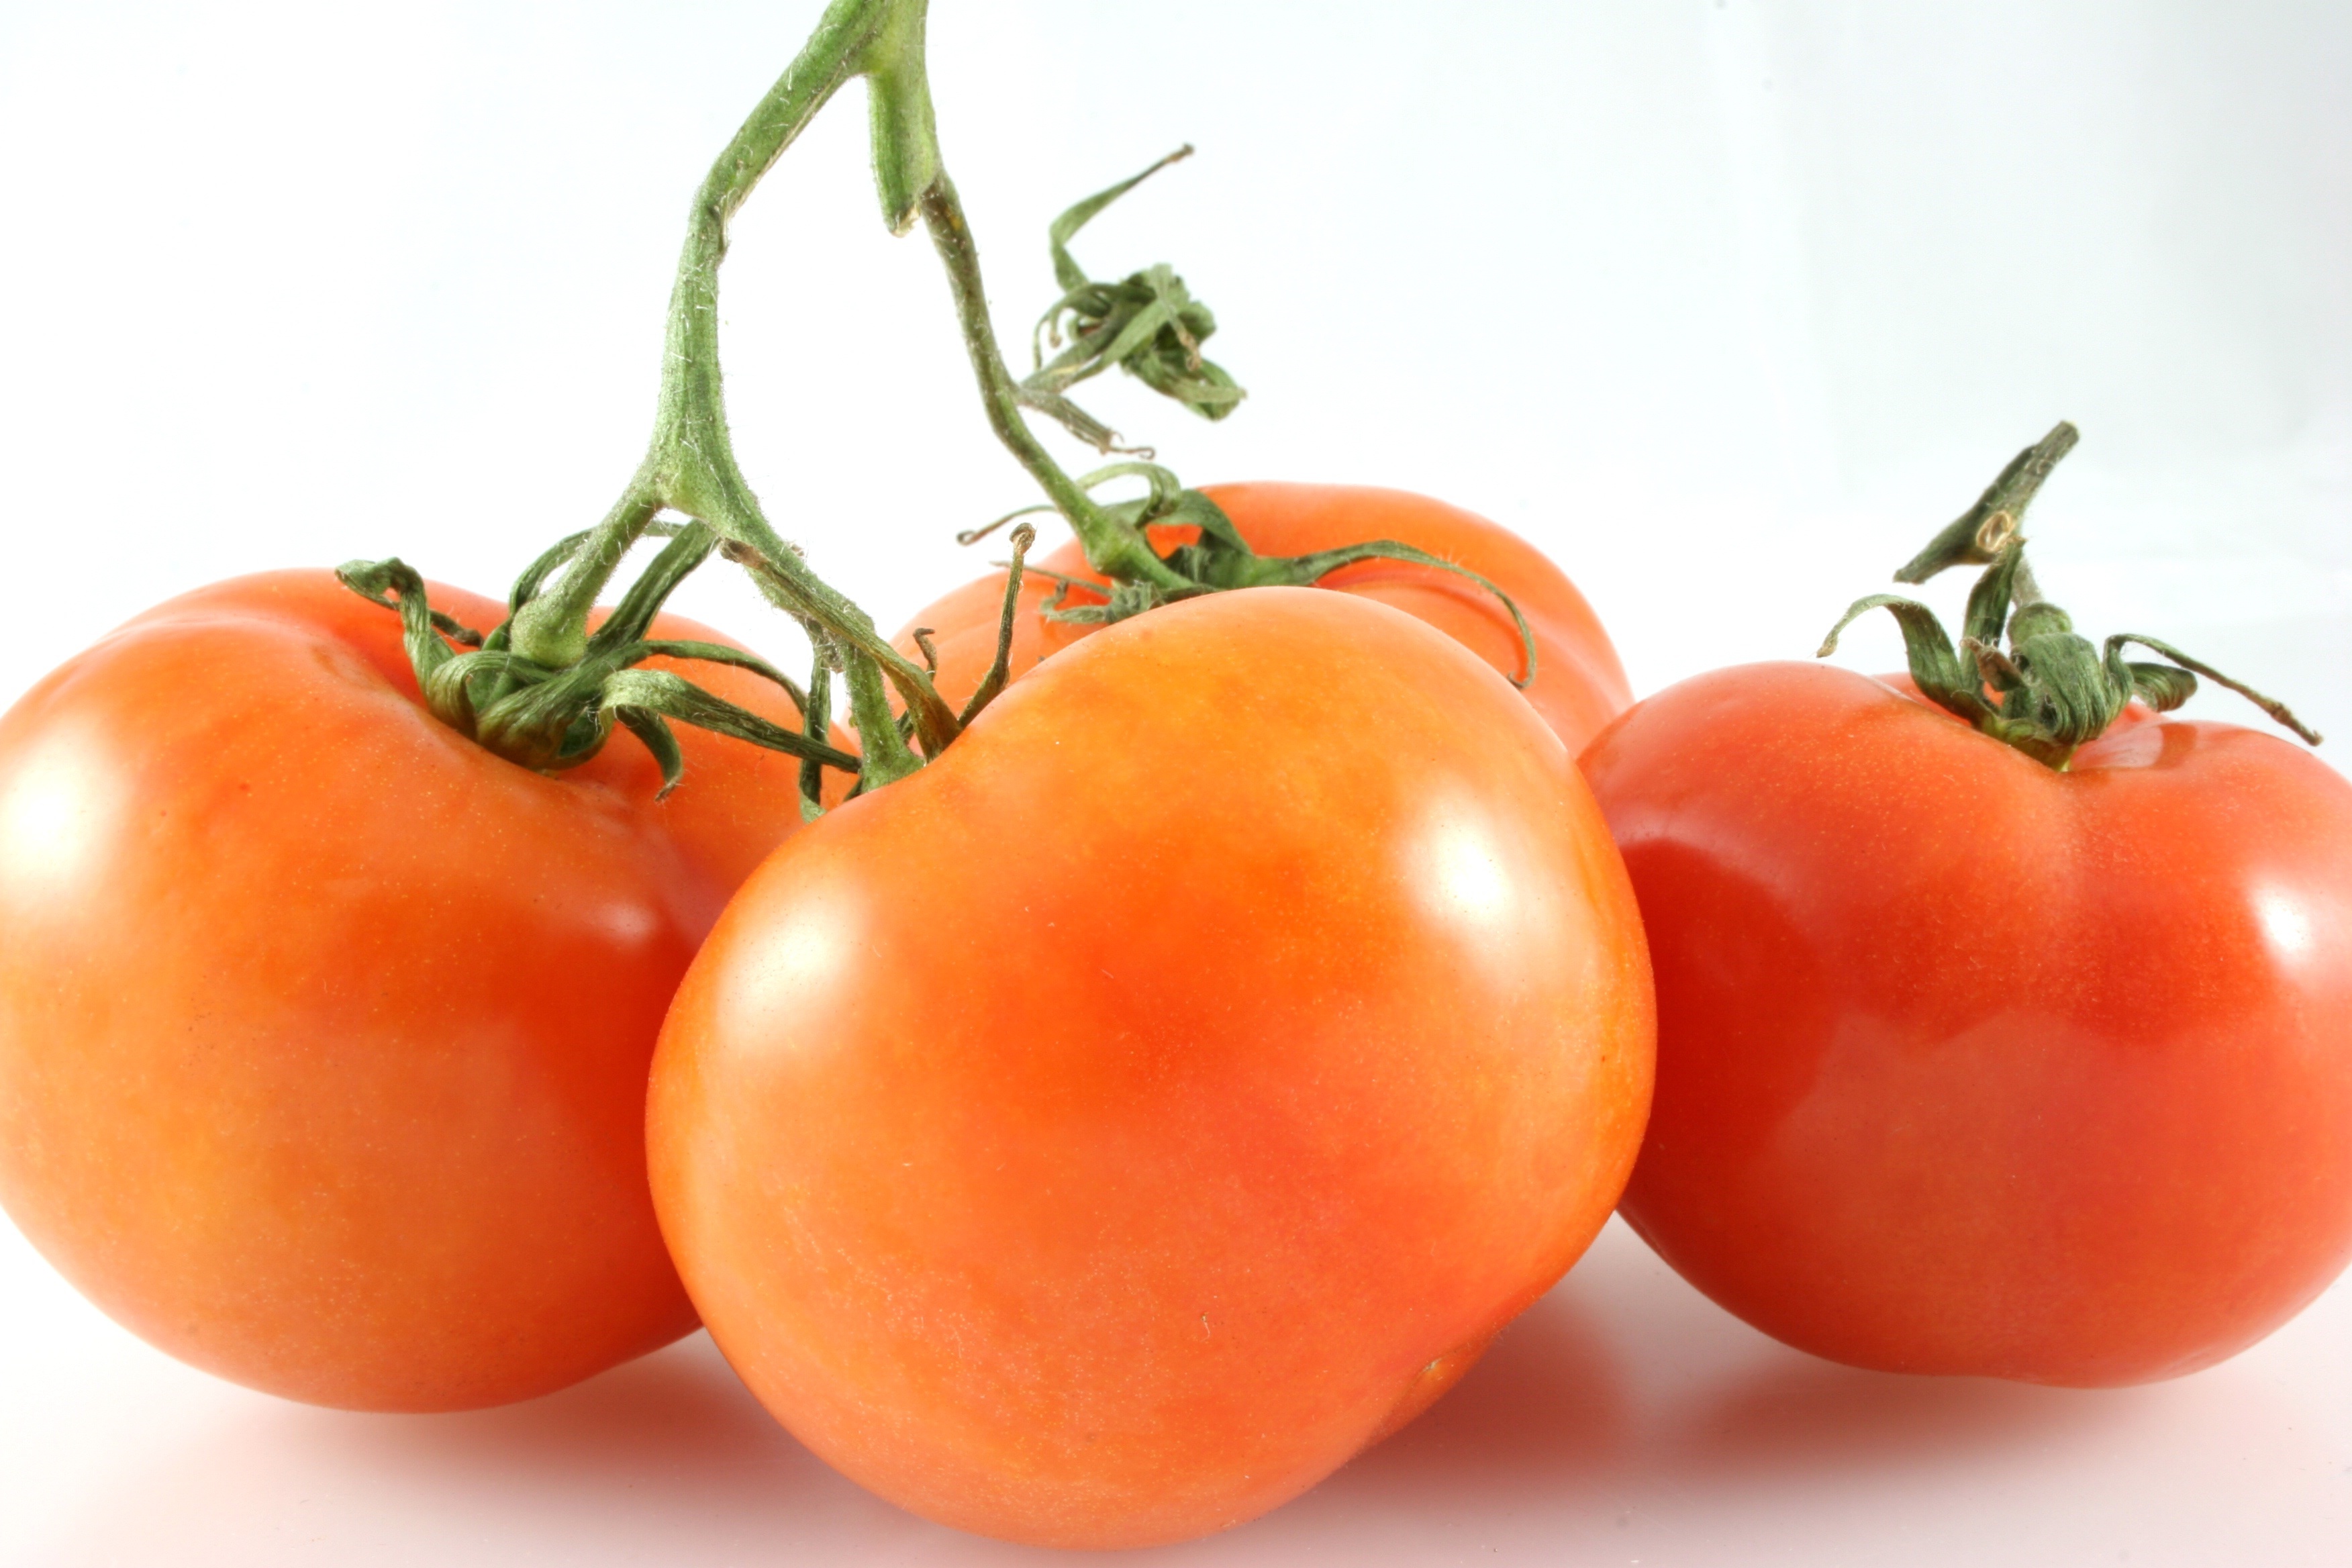 В Смоленской области в 18 тоннах томатов выявили вирус мозаики пепино 